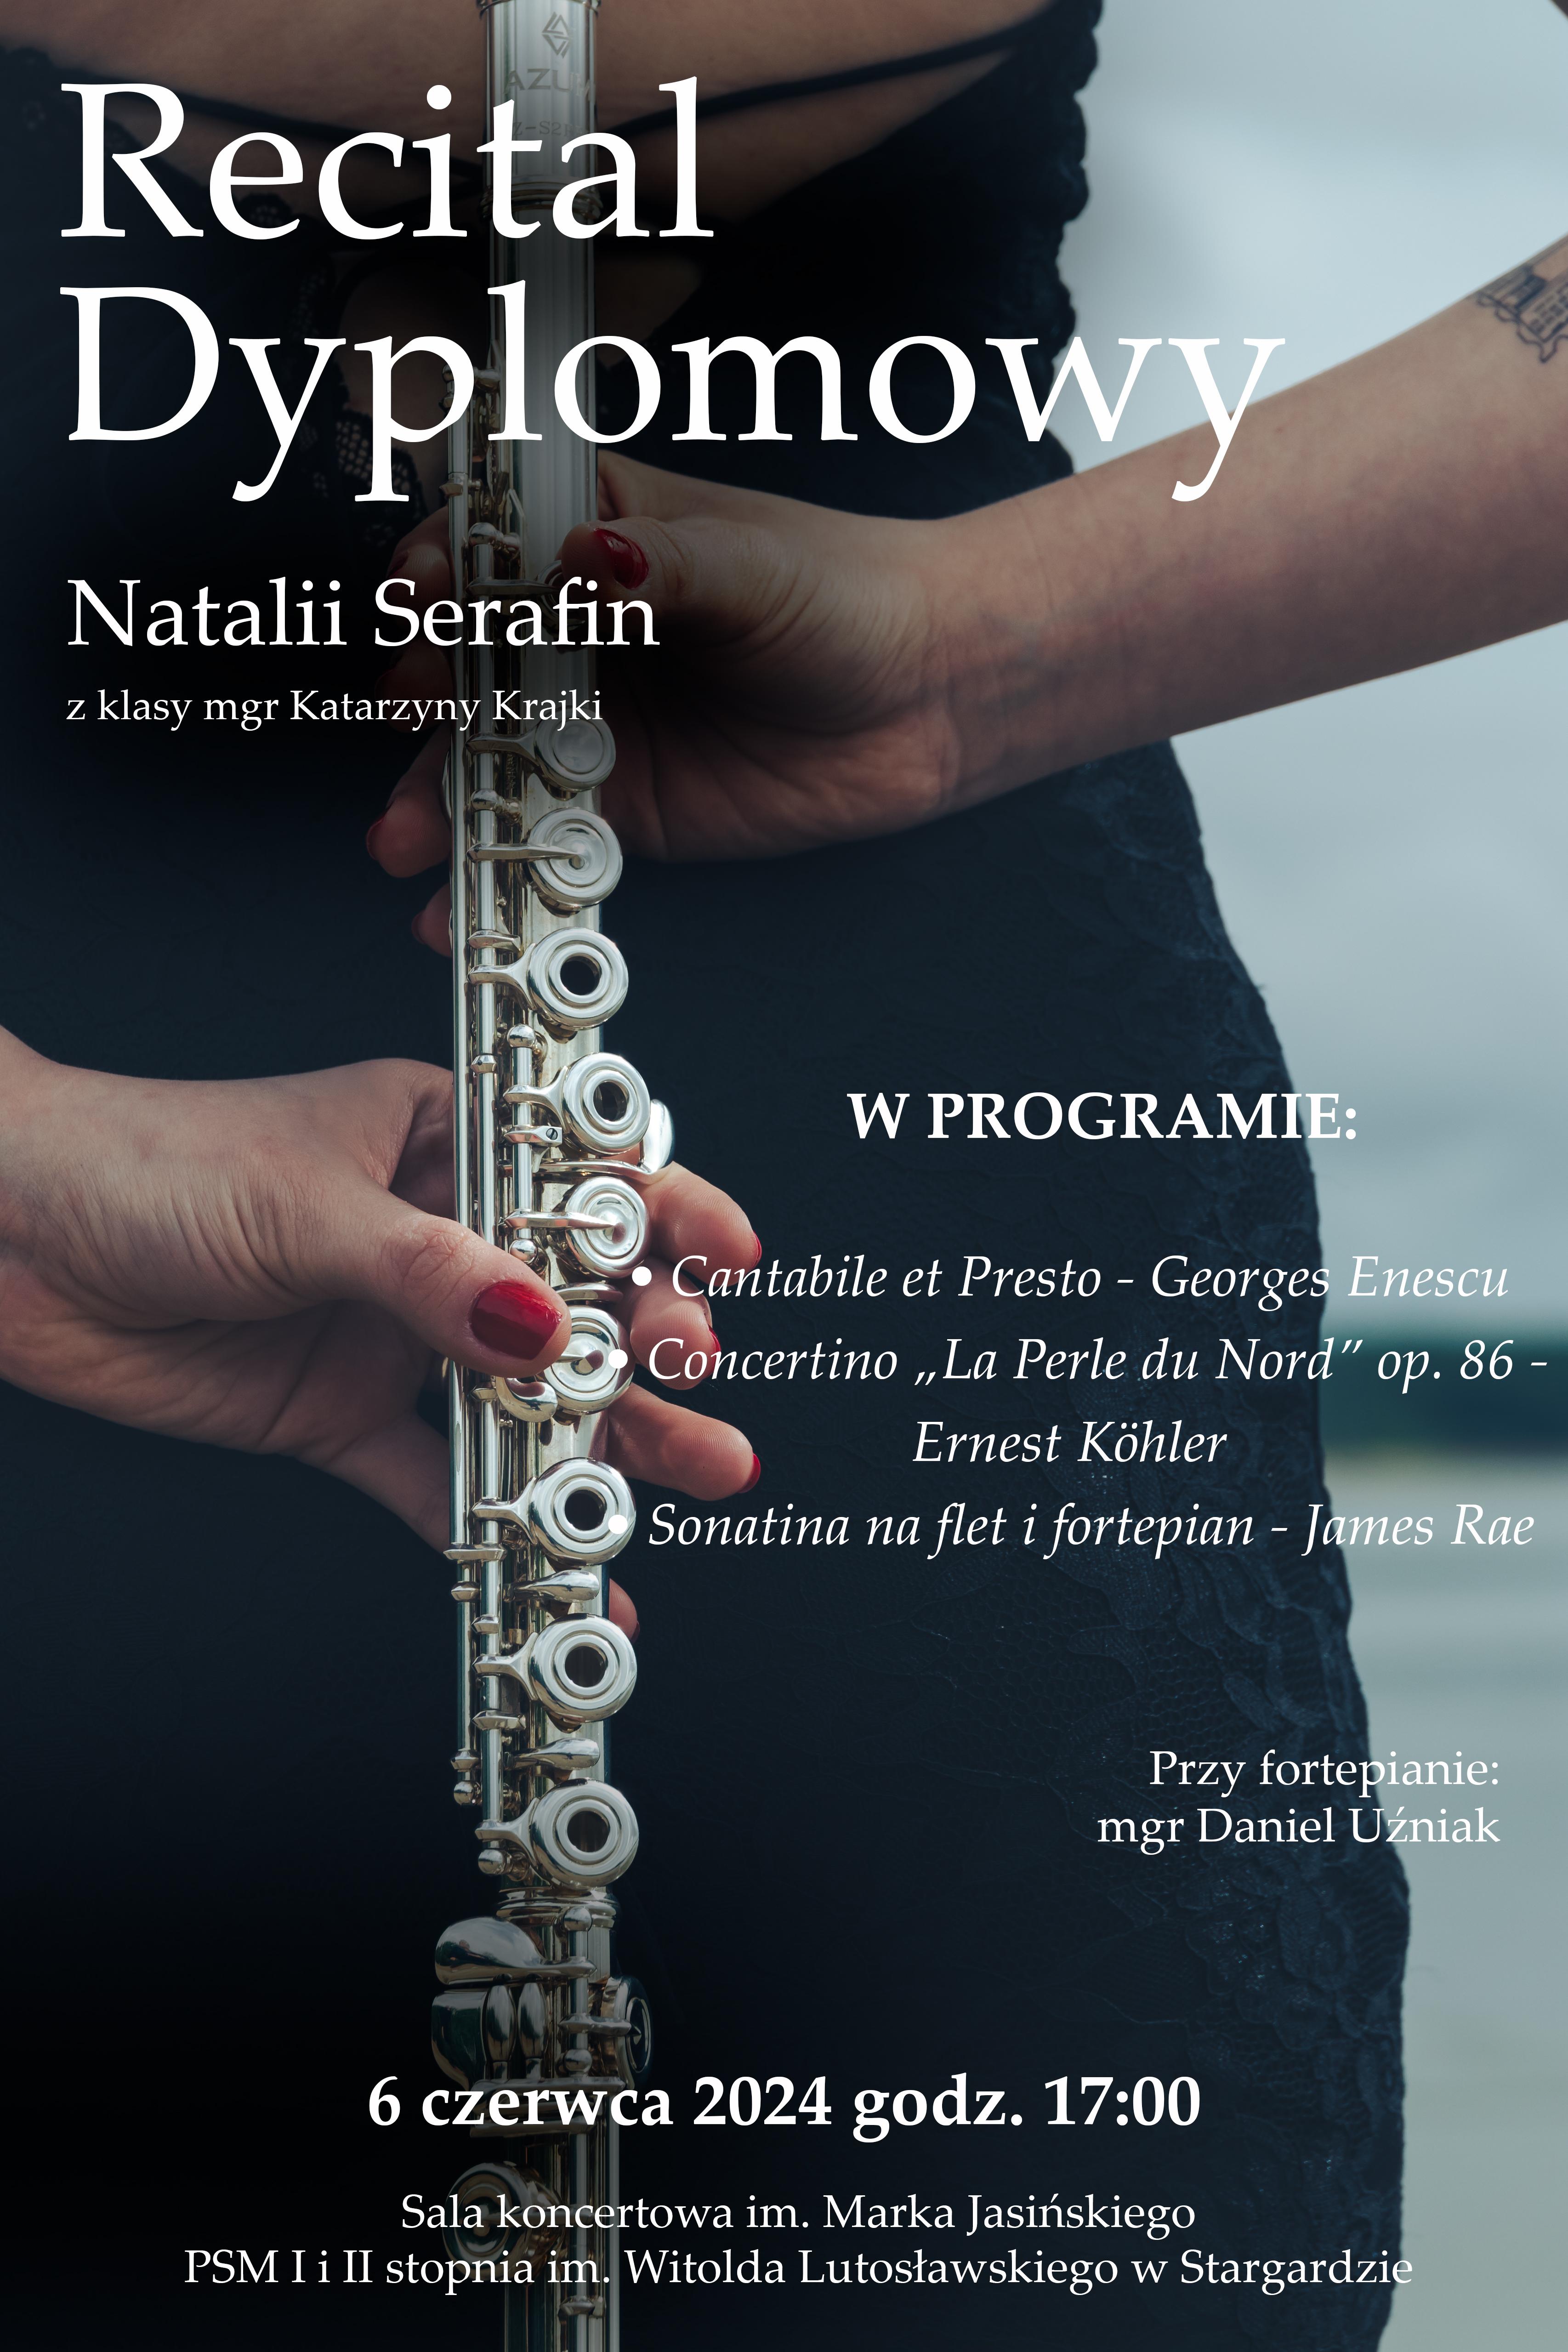 Plakat recitalu dyplomowego Natalii Serafin w dniu 6 czerwca 2024 o godzinie 17.00. Tło plakatu wypełnia postać Natalii trzymającej za sobą oburącz flet w pozycji pionowej.